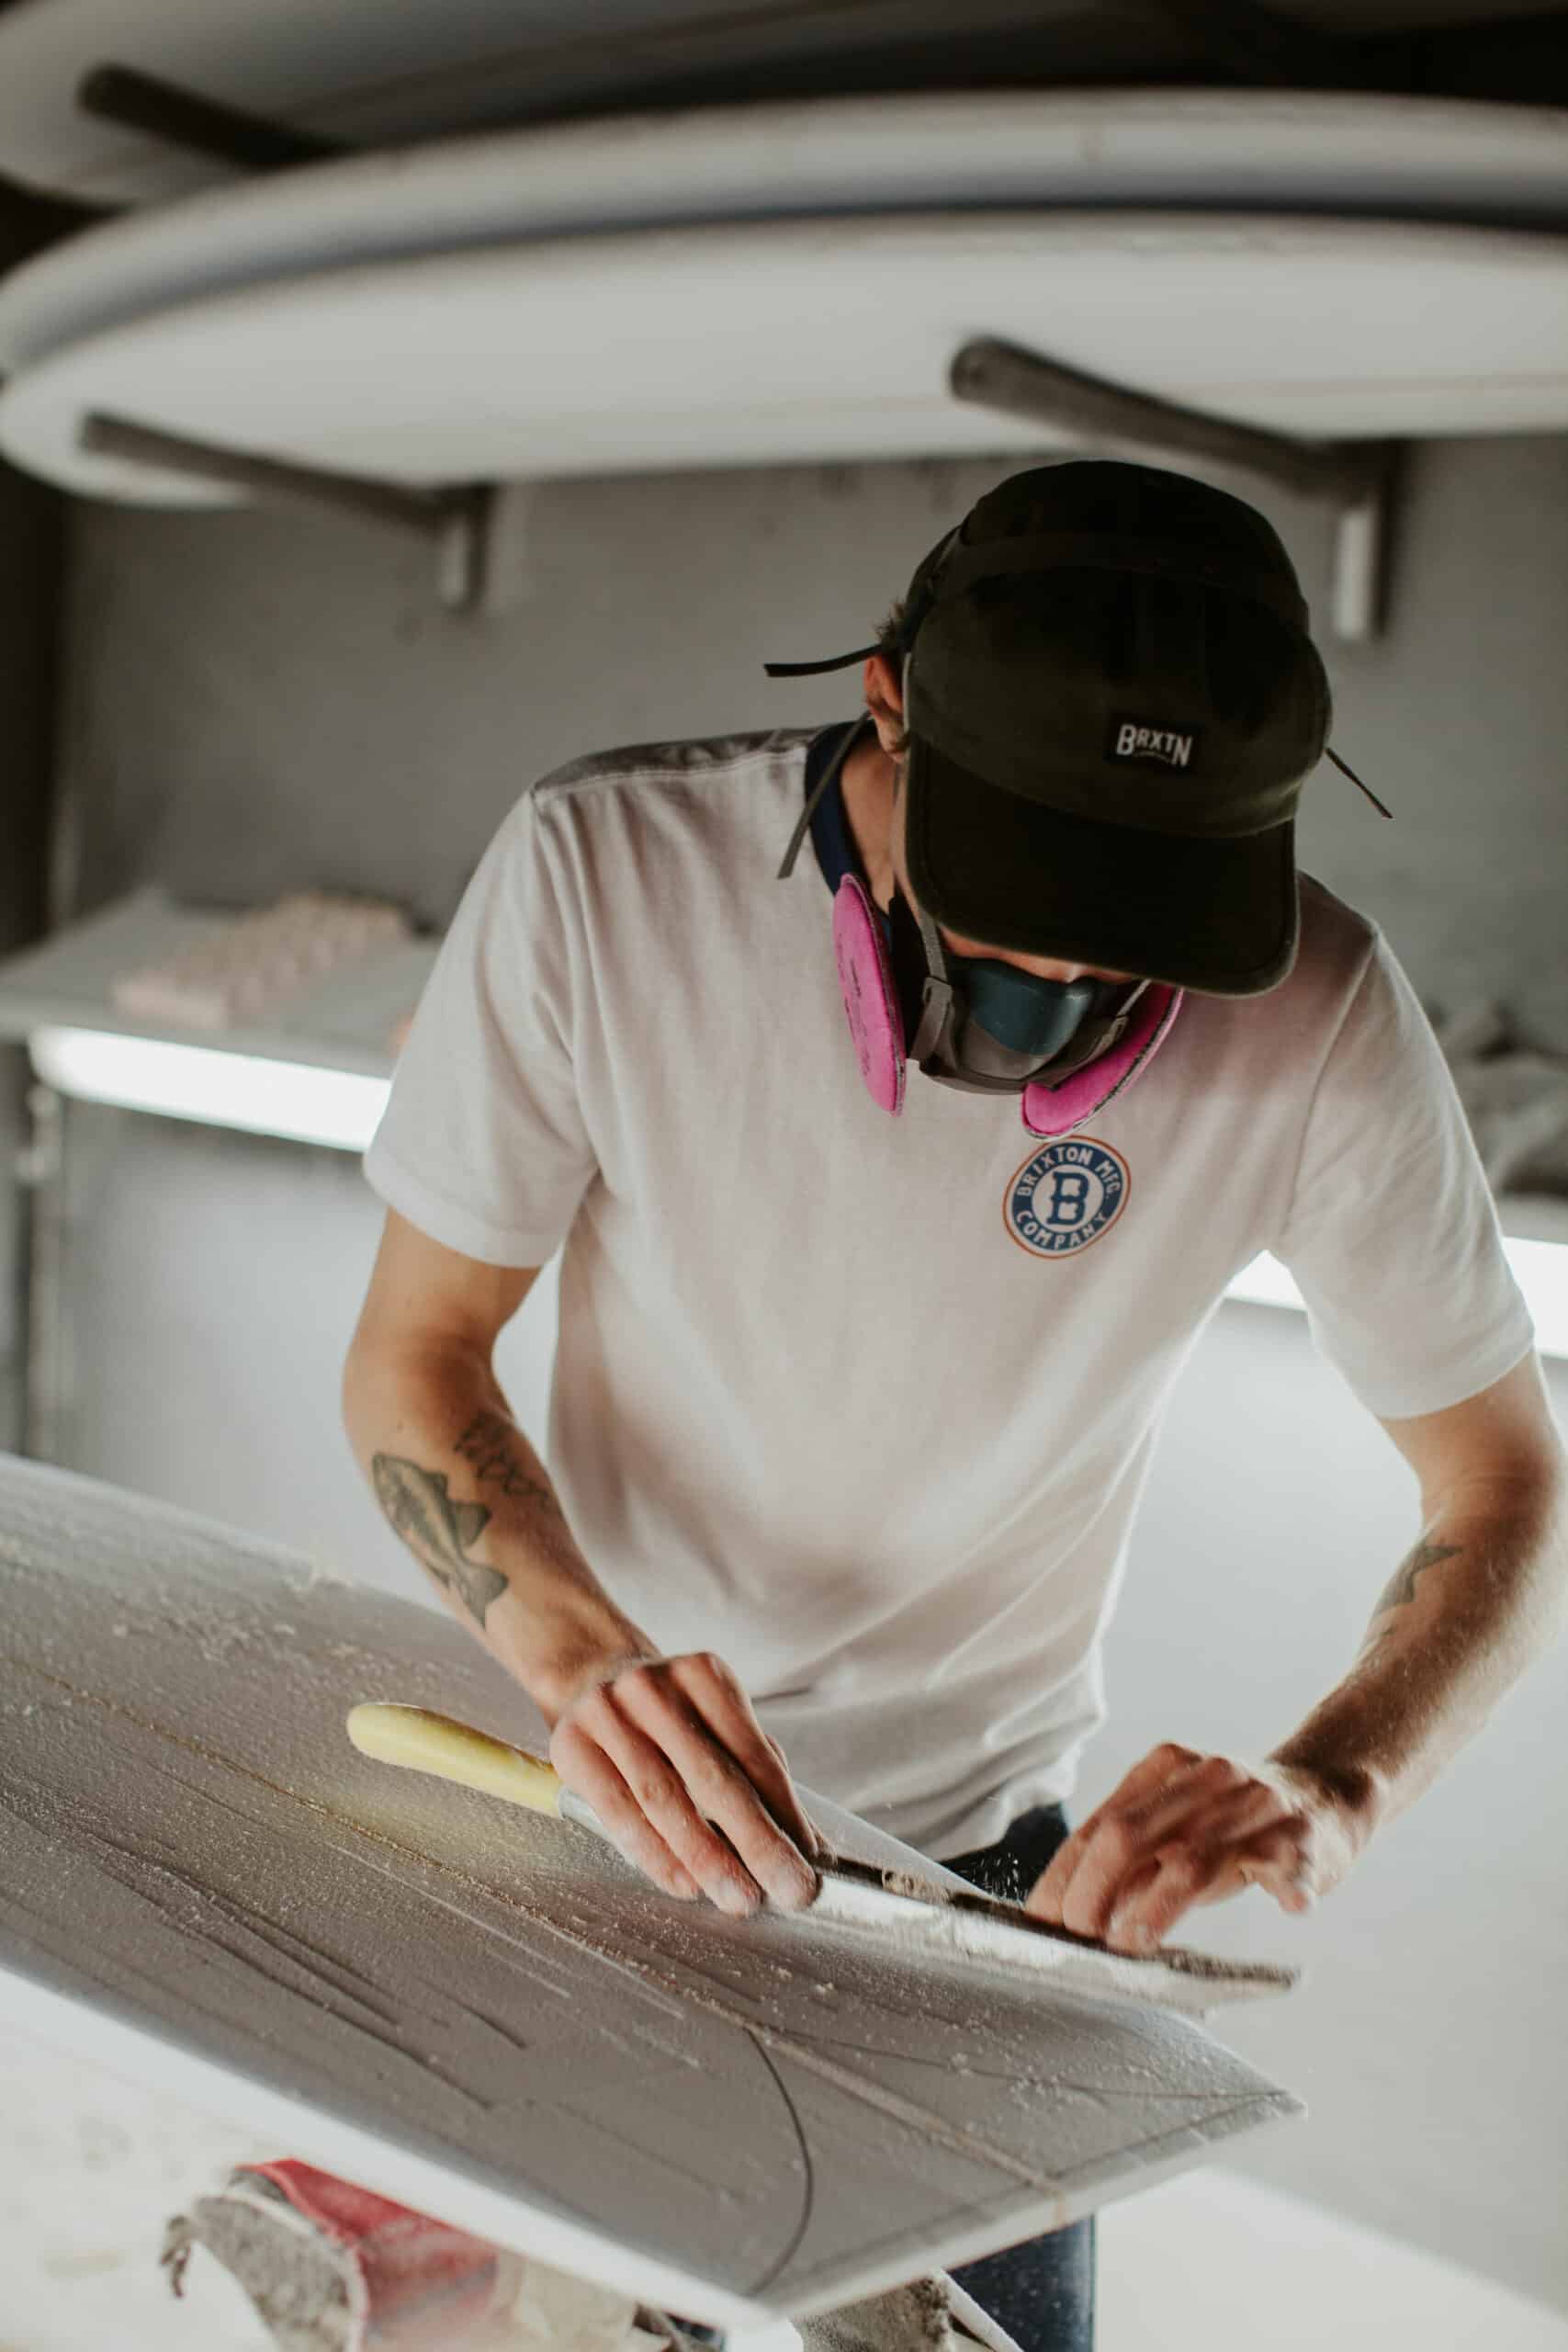 Shapers-Club- Un homme travaille sur une planche de surf dans un atelier. -surfshop-surfboard